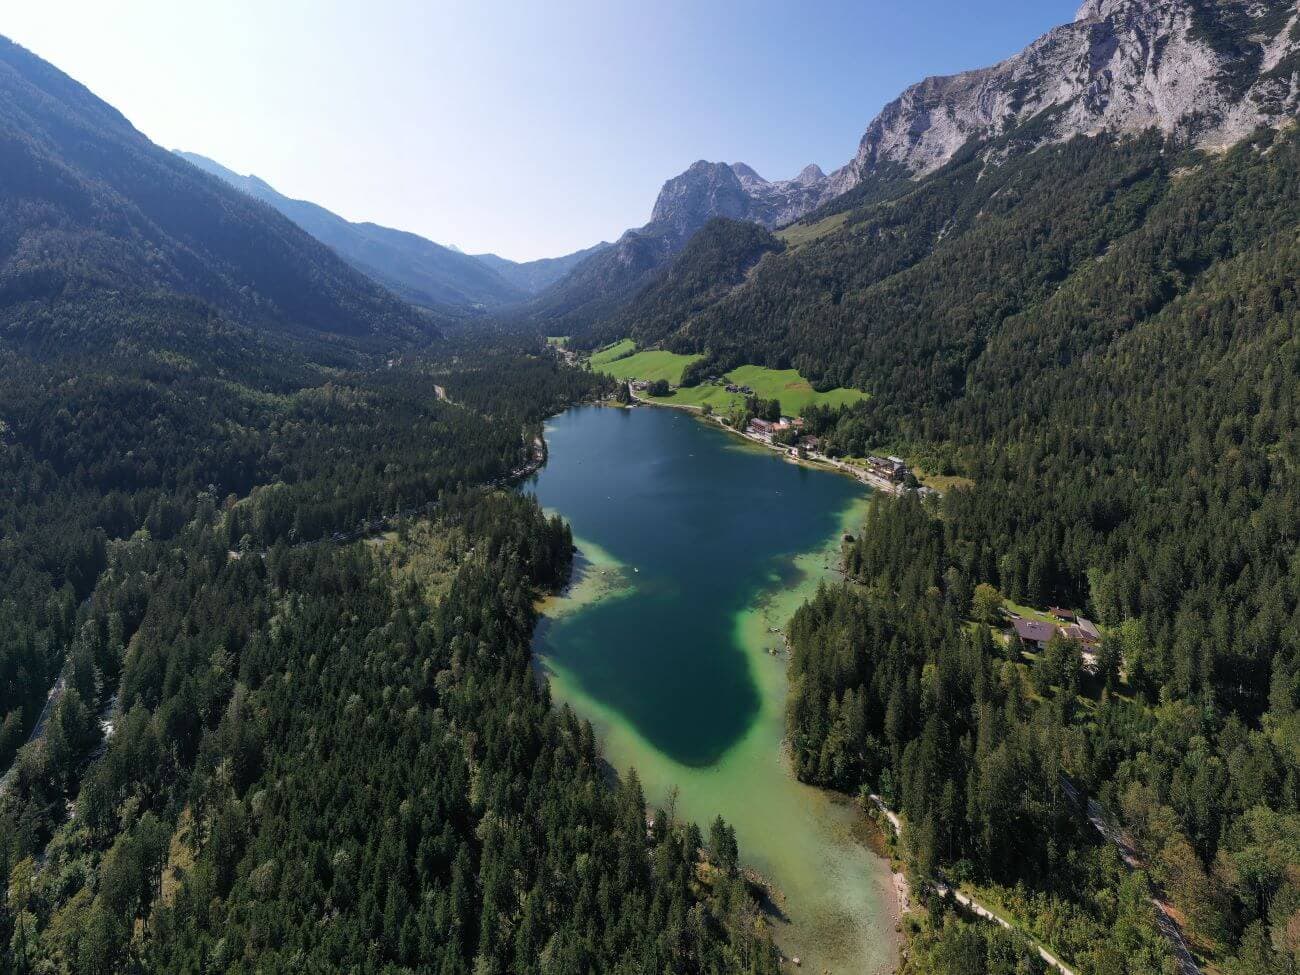 Aeral image of a mountain lake near Munich